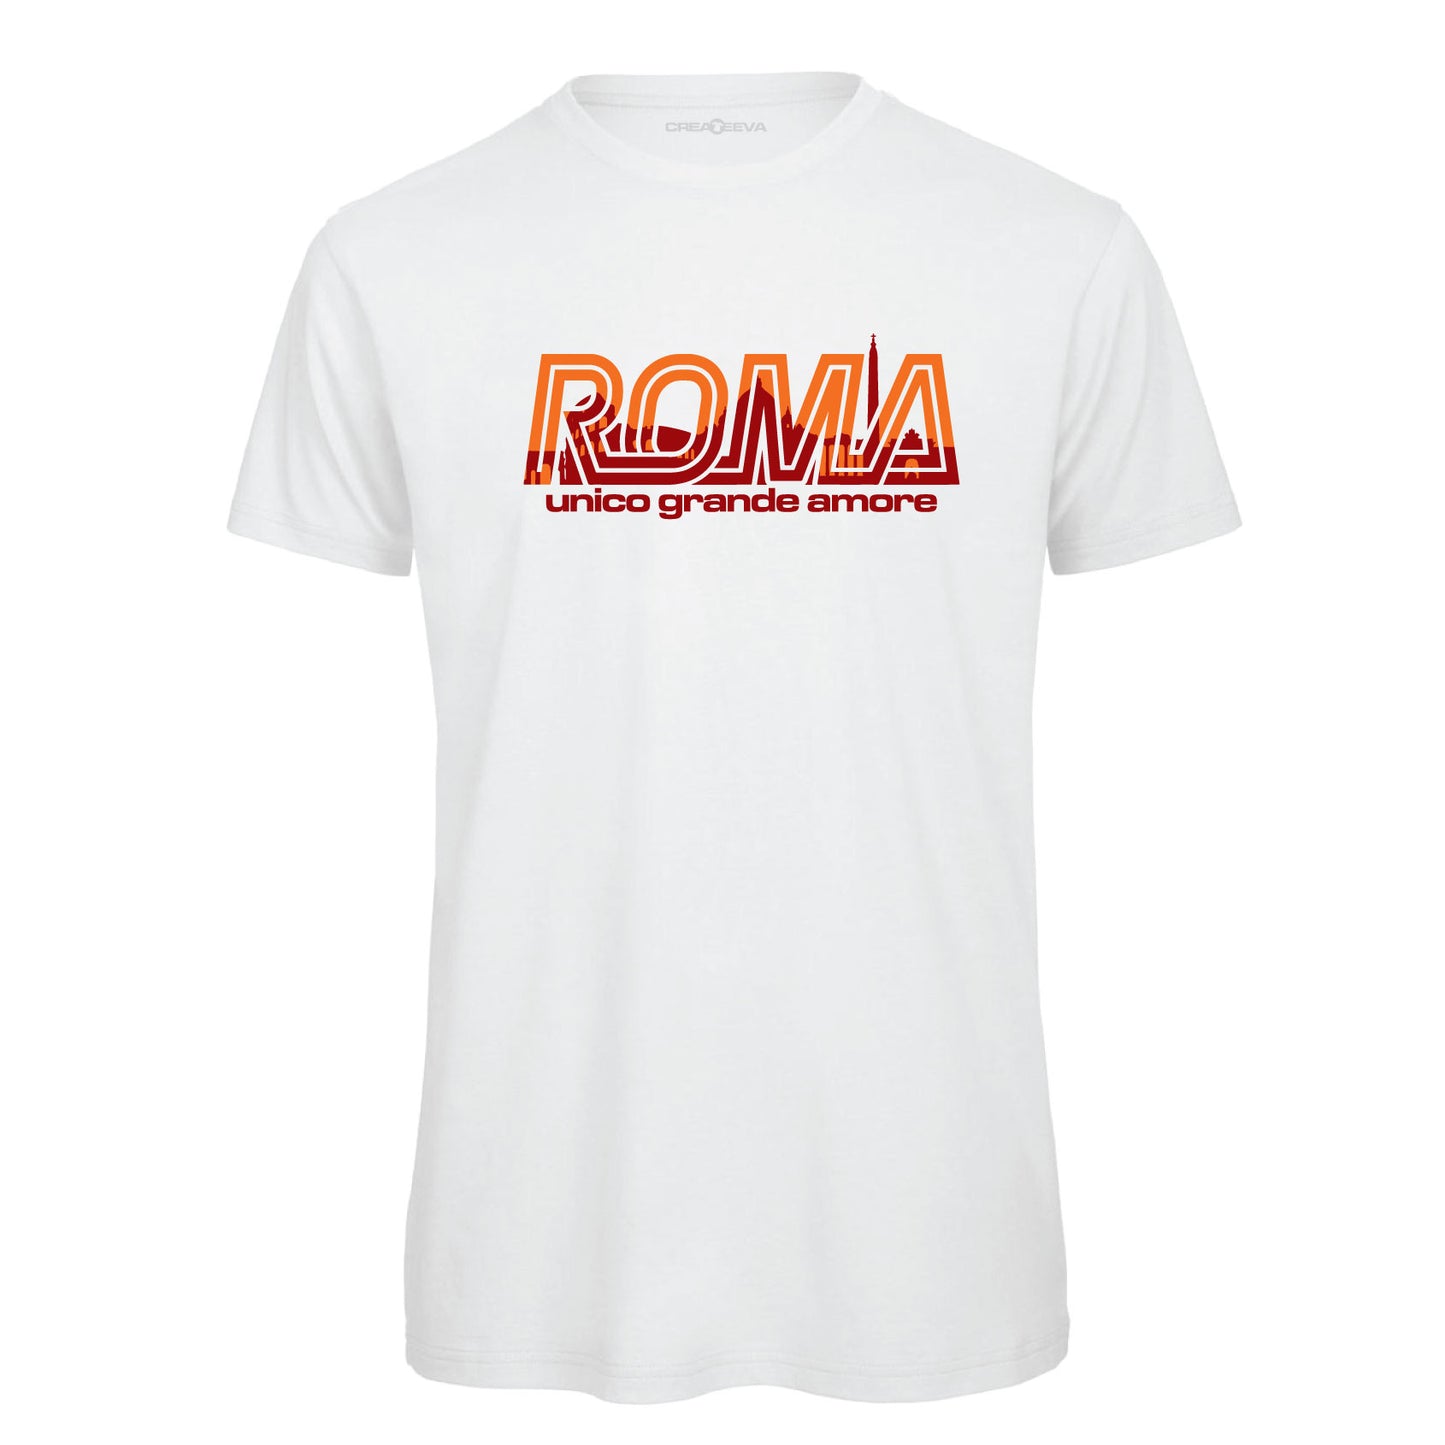 T-shirt Maglietta Roma unico grande amore